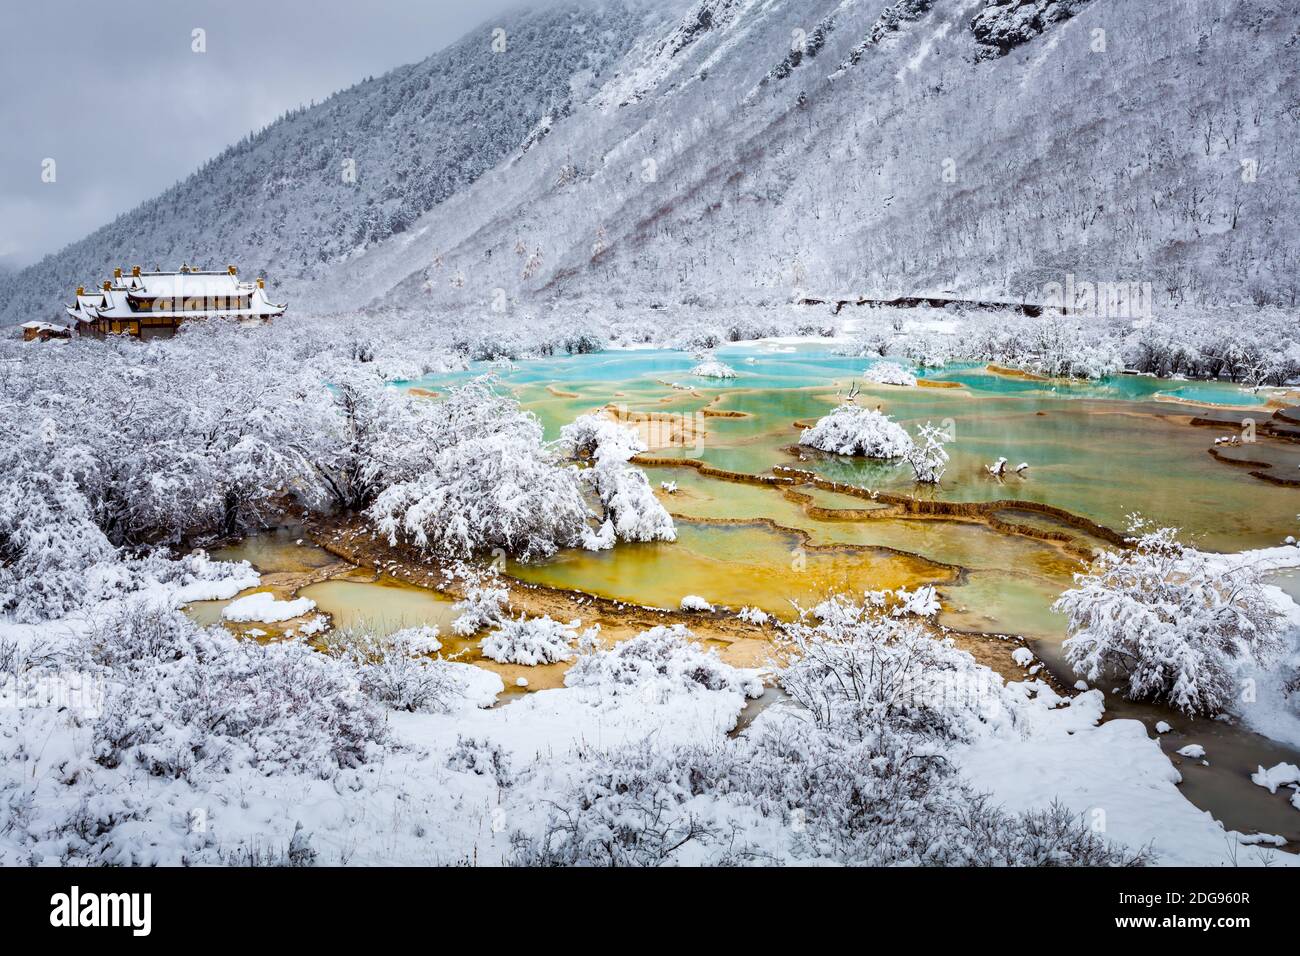 Vista sul lago dai colori ghiacciati e sul tempio tibetano Foto Stock